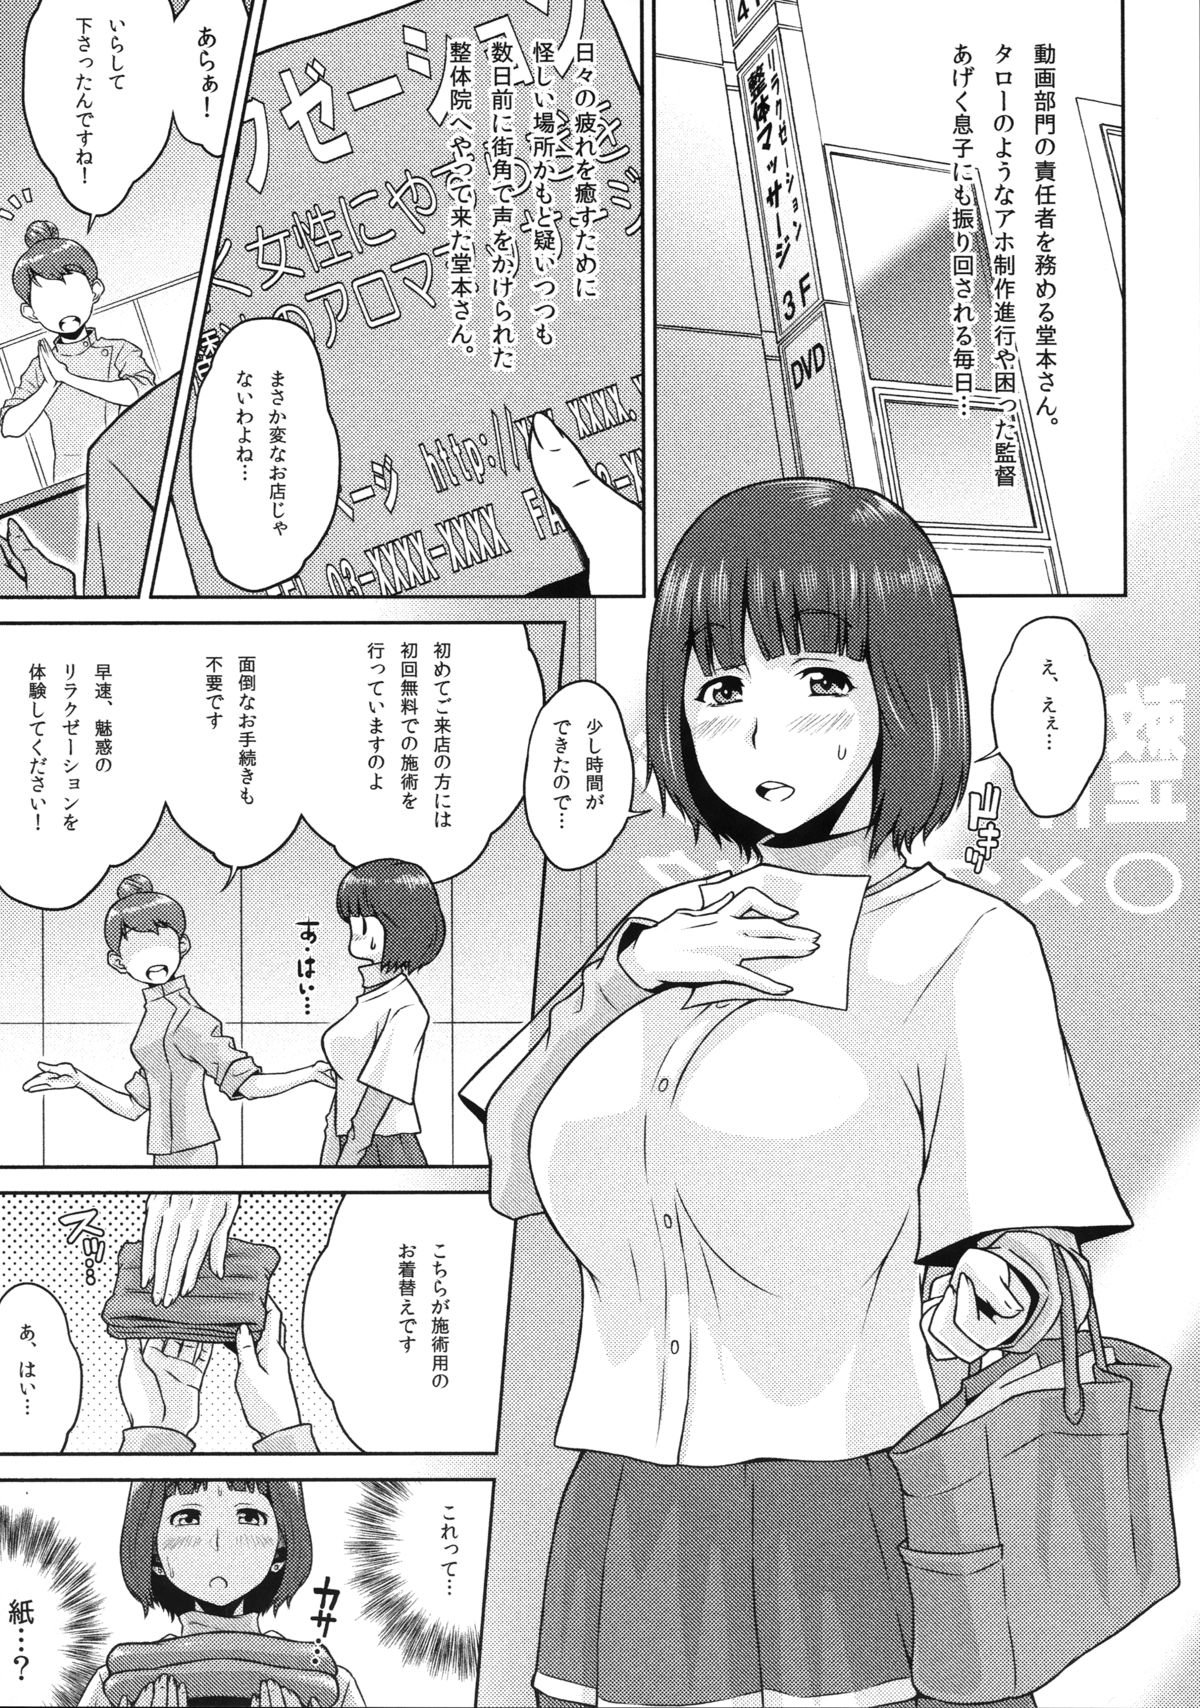 (COMIC1☆9) [MBL (Shino, Kemigawa, Murasaki Syu)] SHIROPAKO (SHIROBAKO) page 8 full